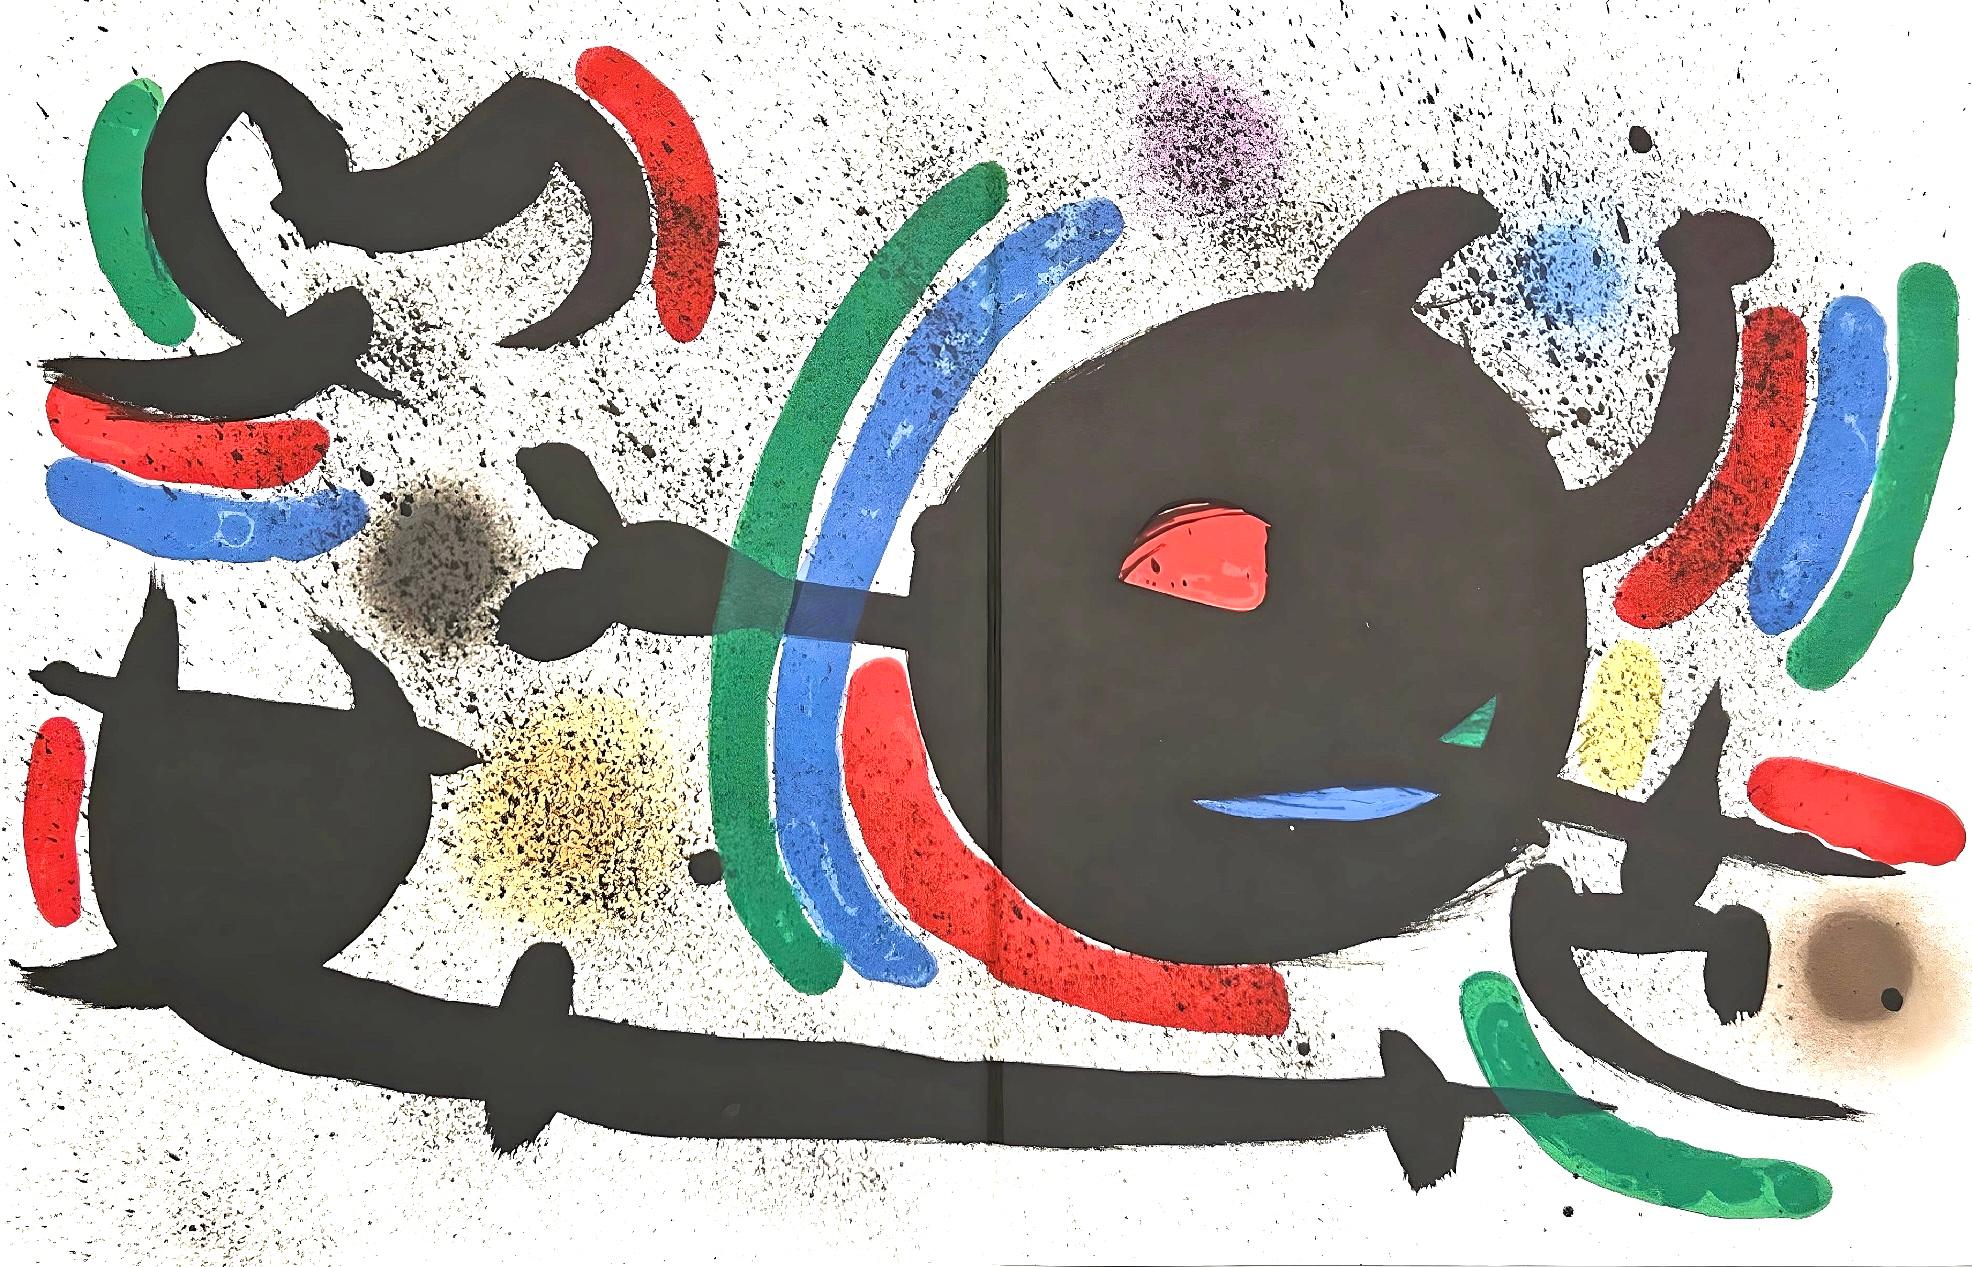 Joan Miró Abstract Print - Miró, Litógrafia original X (Cramer 160; Mourlot 866), Litógrafo I (after)